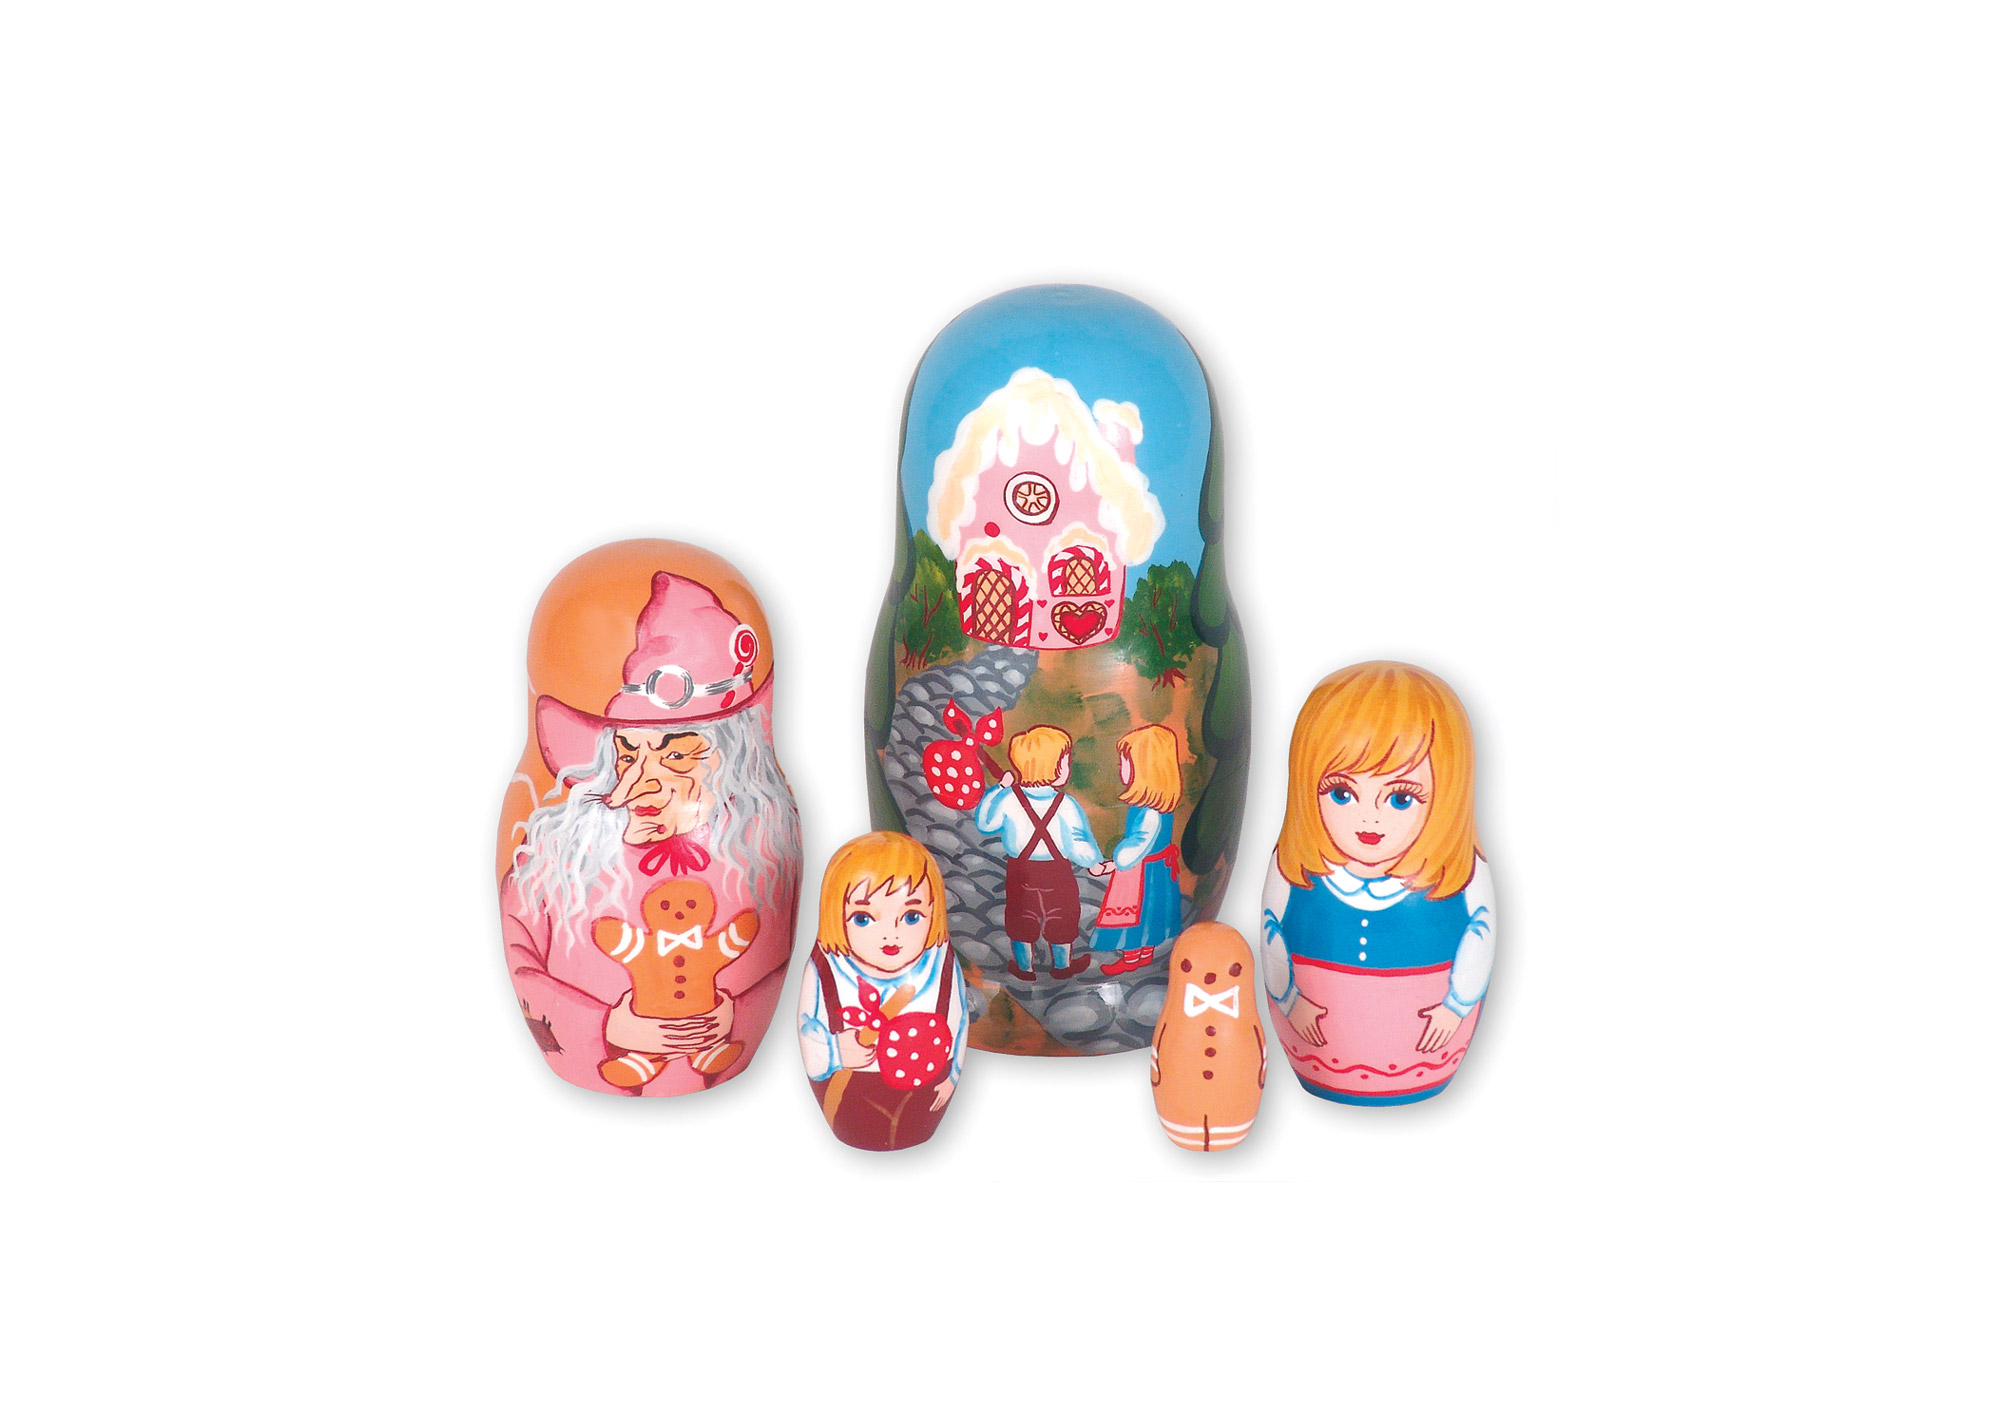 Buy Hansel and Gretel Doll 5pc./5" at GoldenCockerel.com